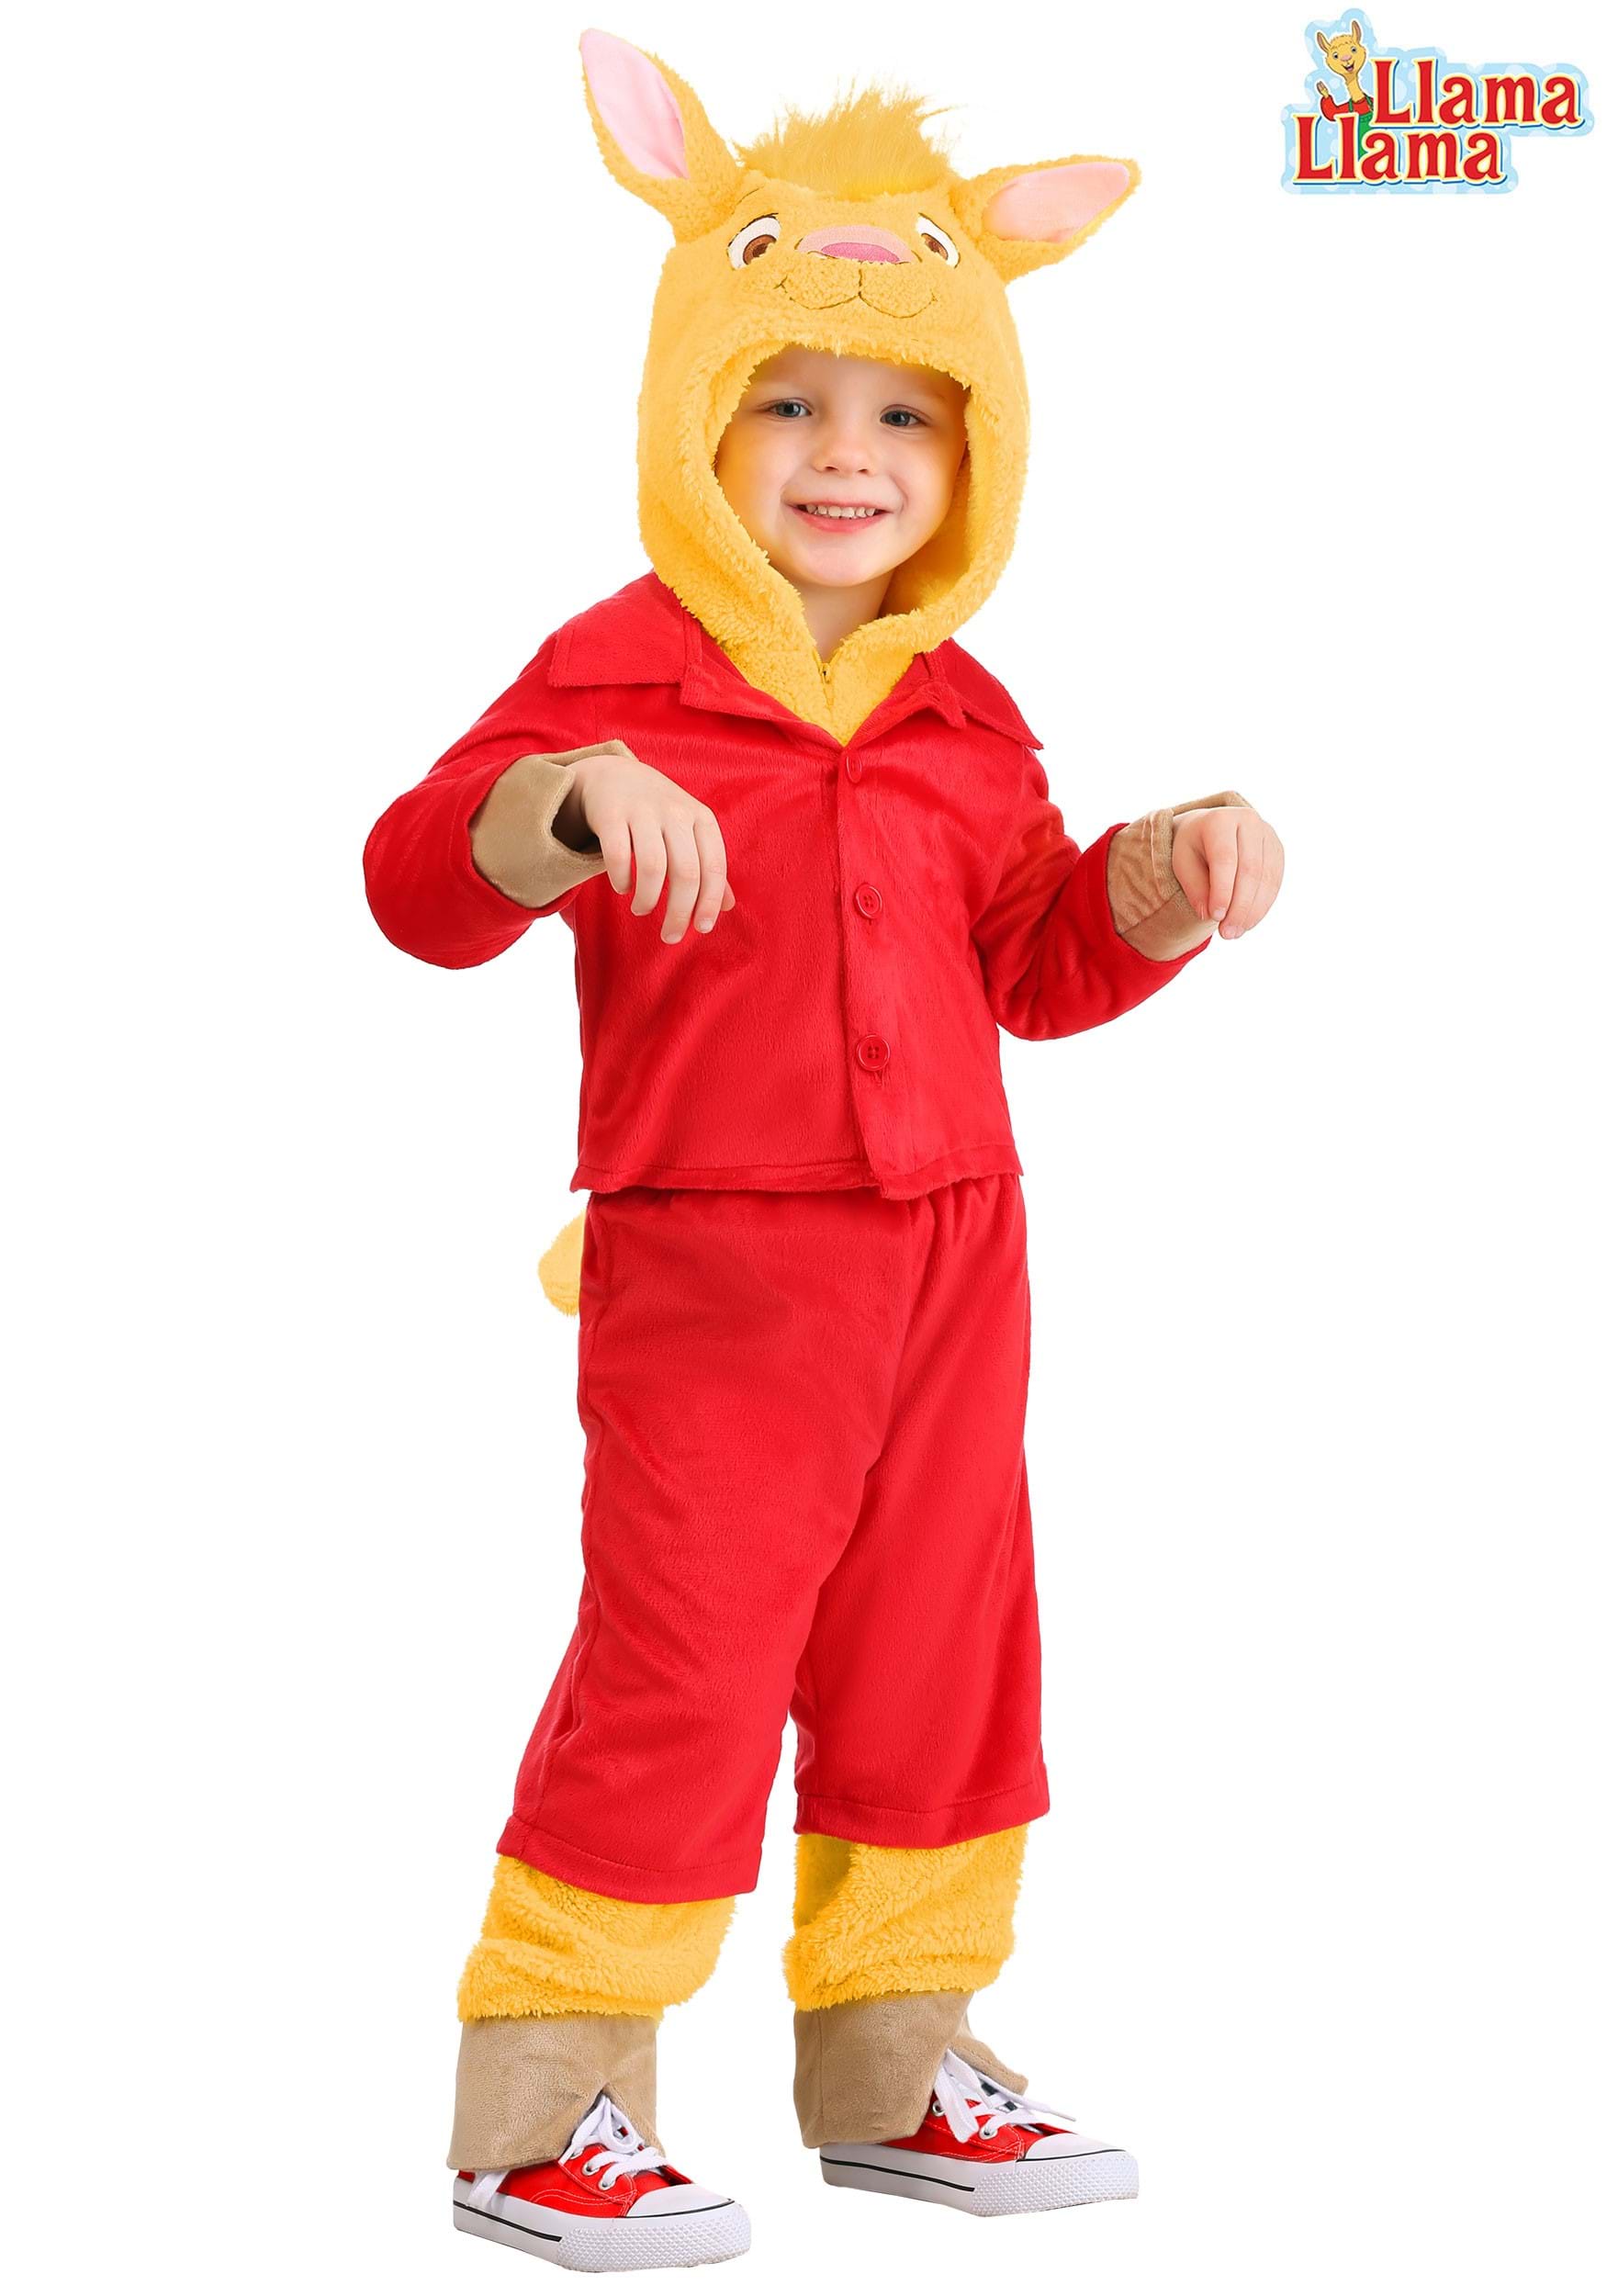 Llama Llama Toddler’s Red Pajama Costume